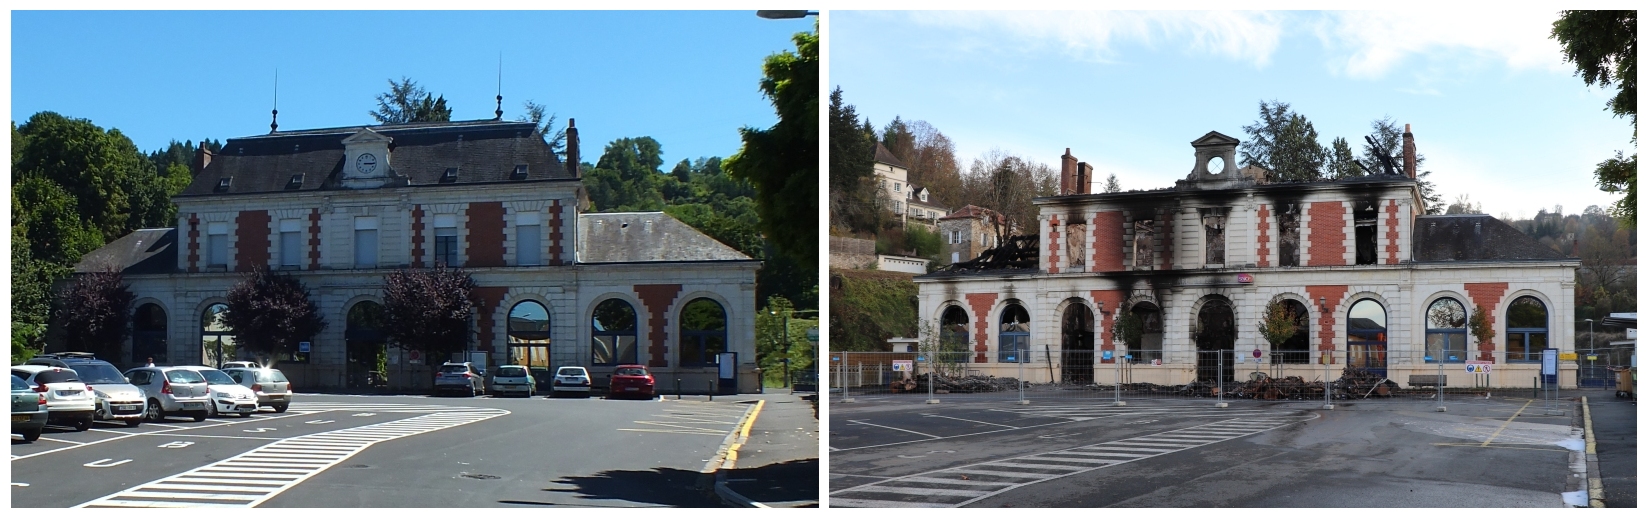 Gare ferroviaire de Figeac dans le Lot - LOT'refois - Photo 2013 - Photo 2018